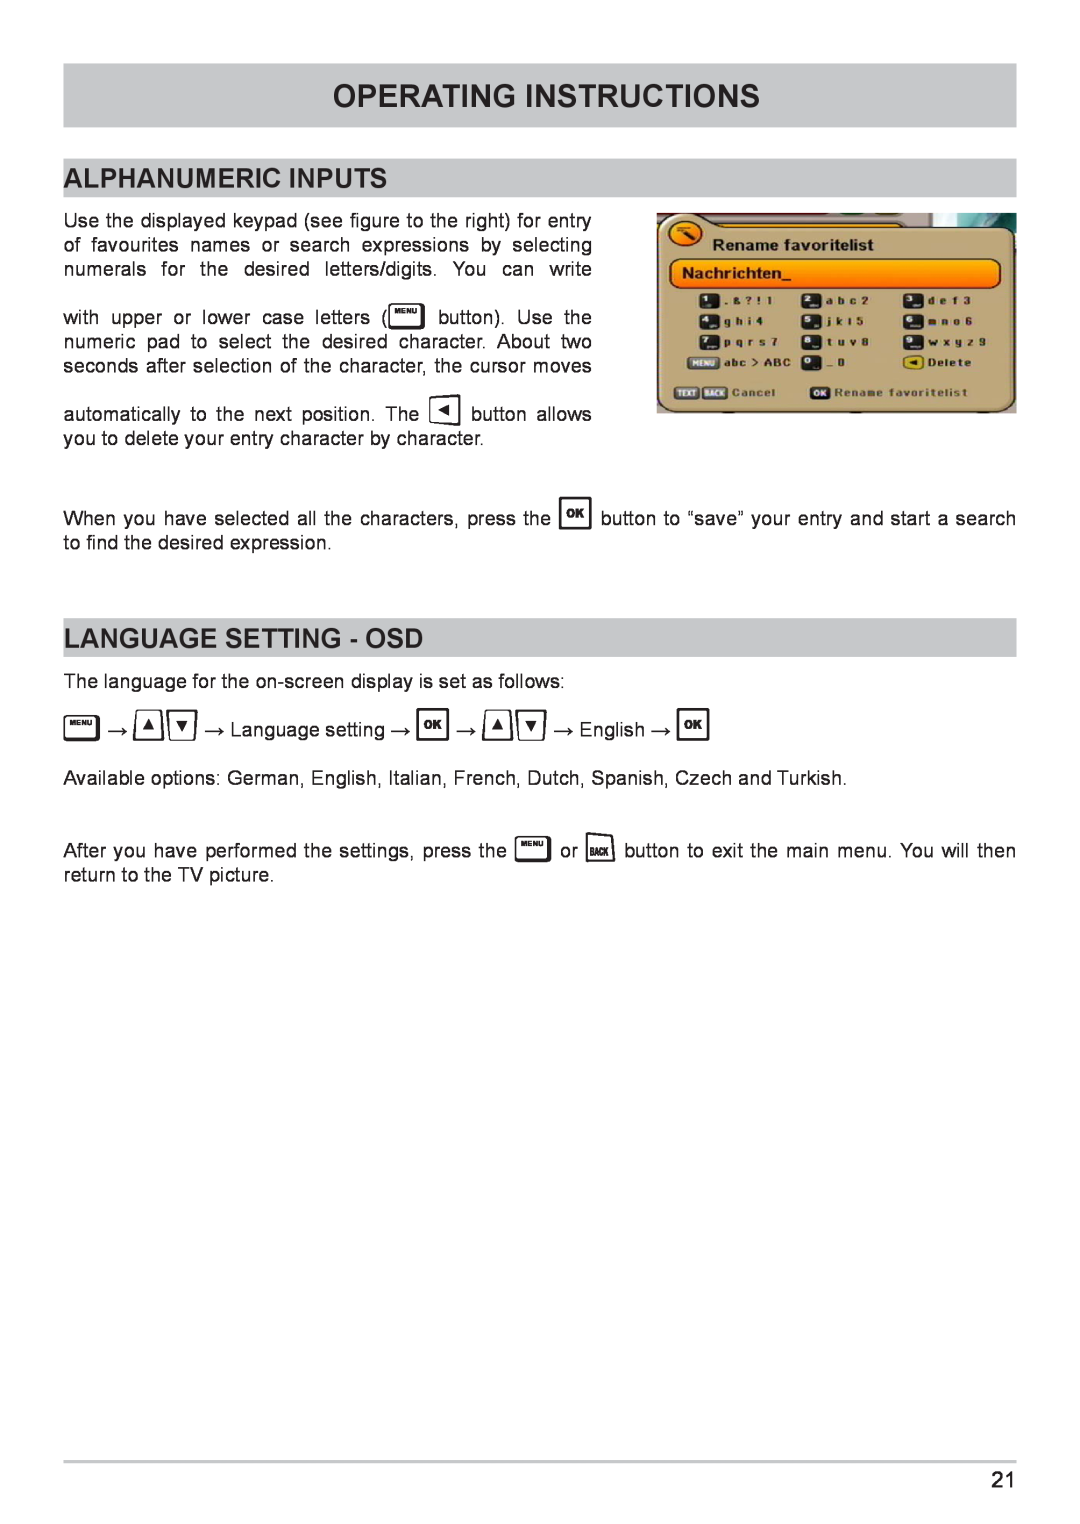 Kathrein UFC 662sw manual Alphanumeric Inputs, Language Setting - Osd, Operating Instructions 